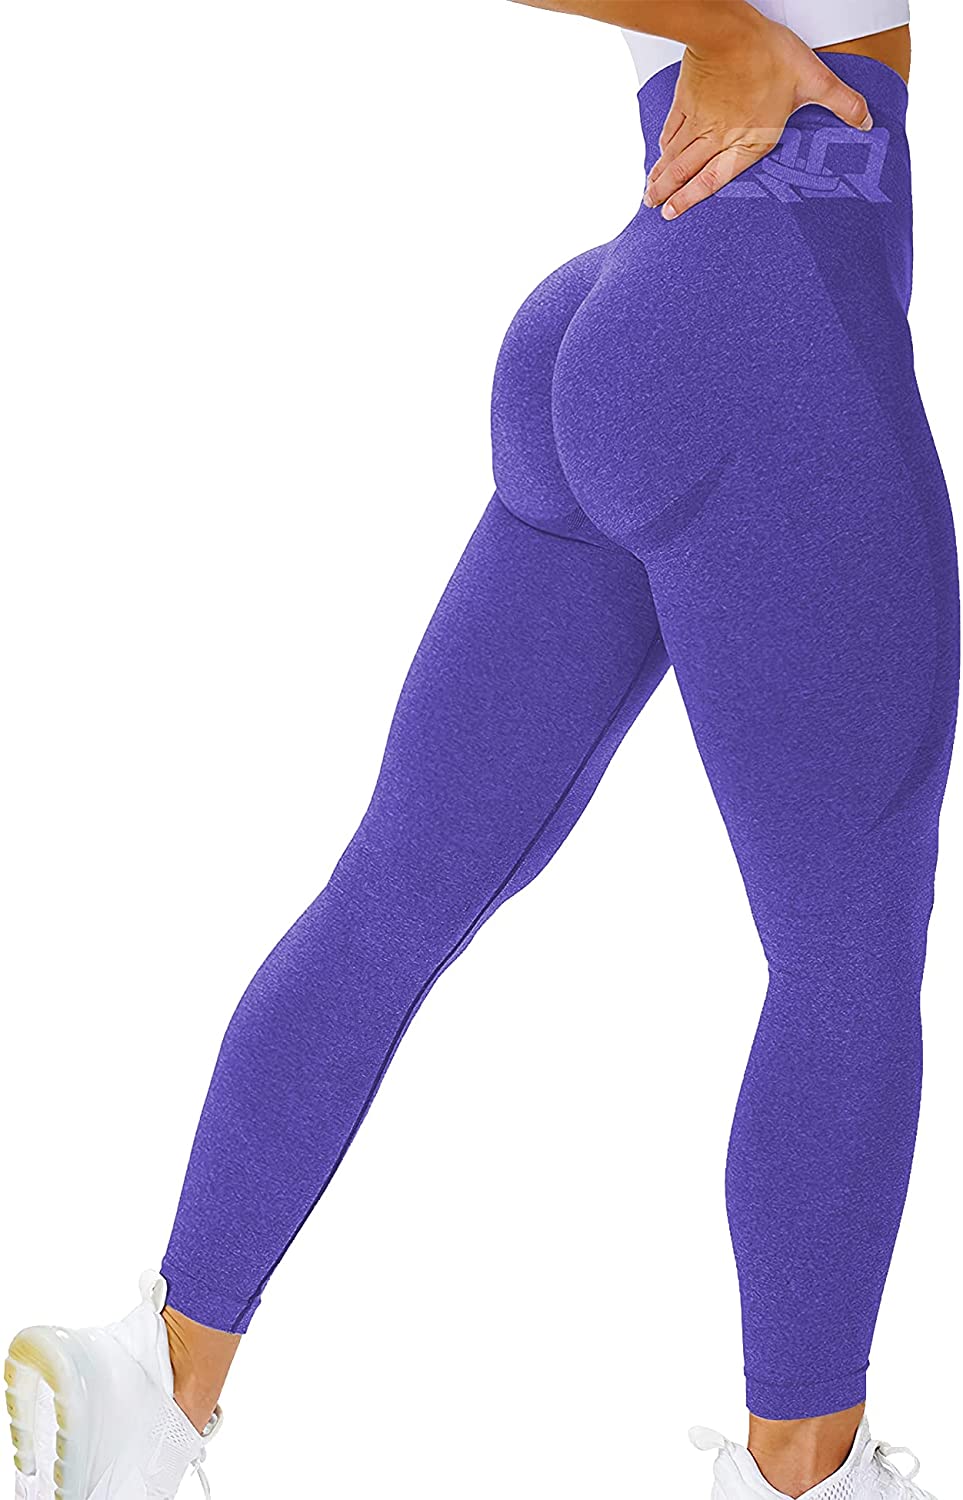 Buy QOQ Women's High Waisted Butt Lifting Workout Leggings